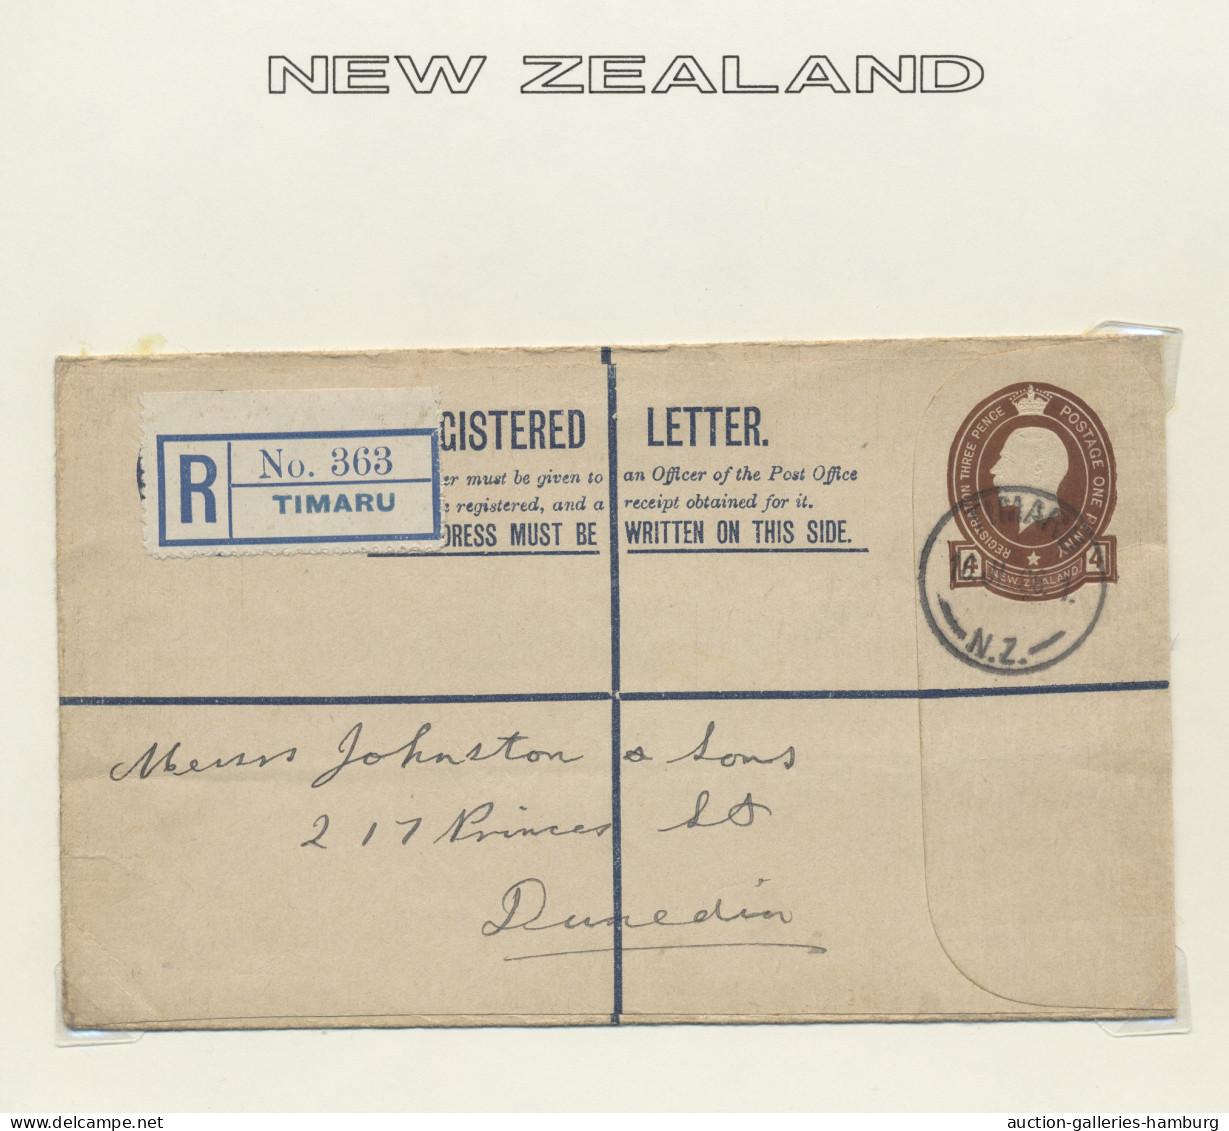 o/**/Cover New Zealand: 1862-2005, überwiegend gestempelte Sammlung in 5 selbstgestalteten